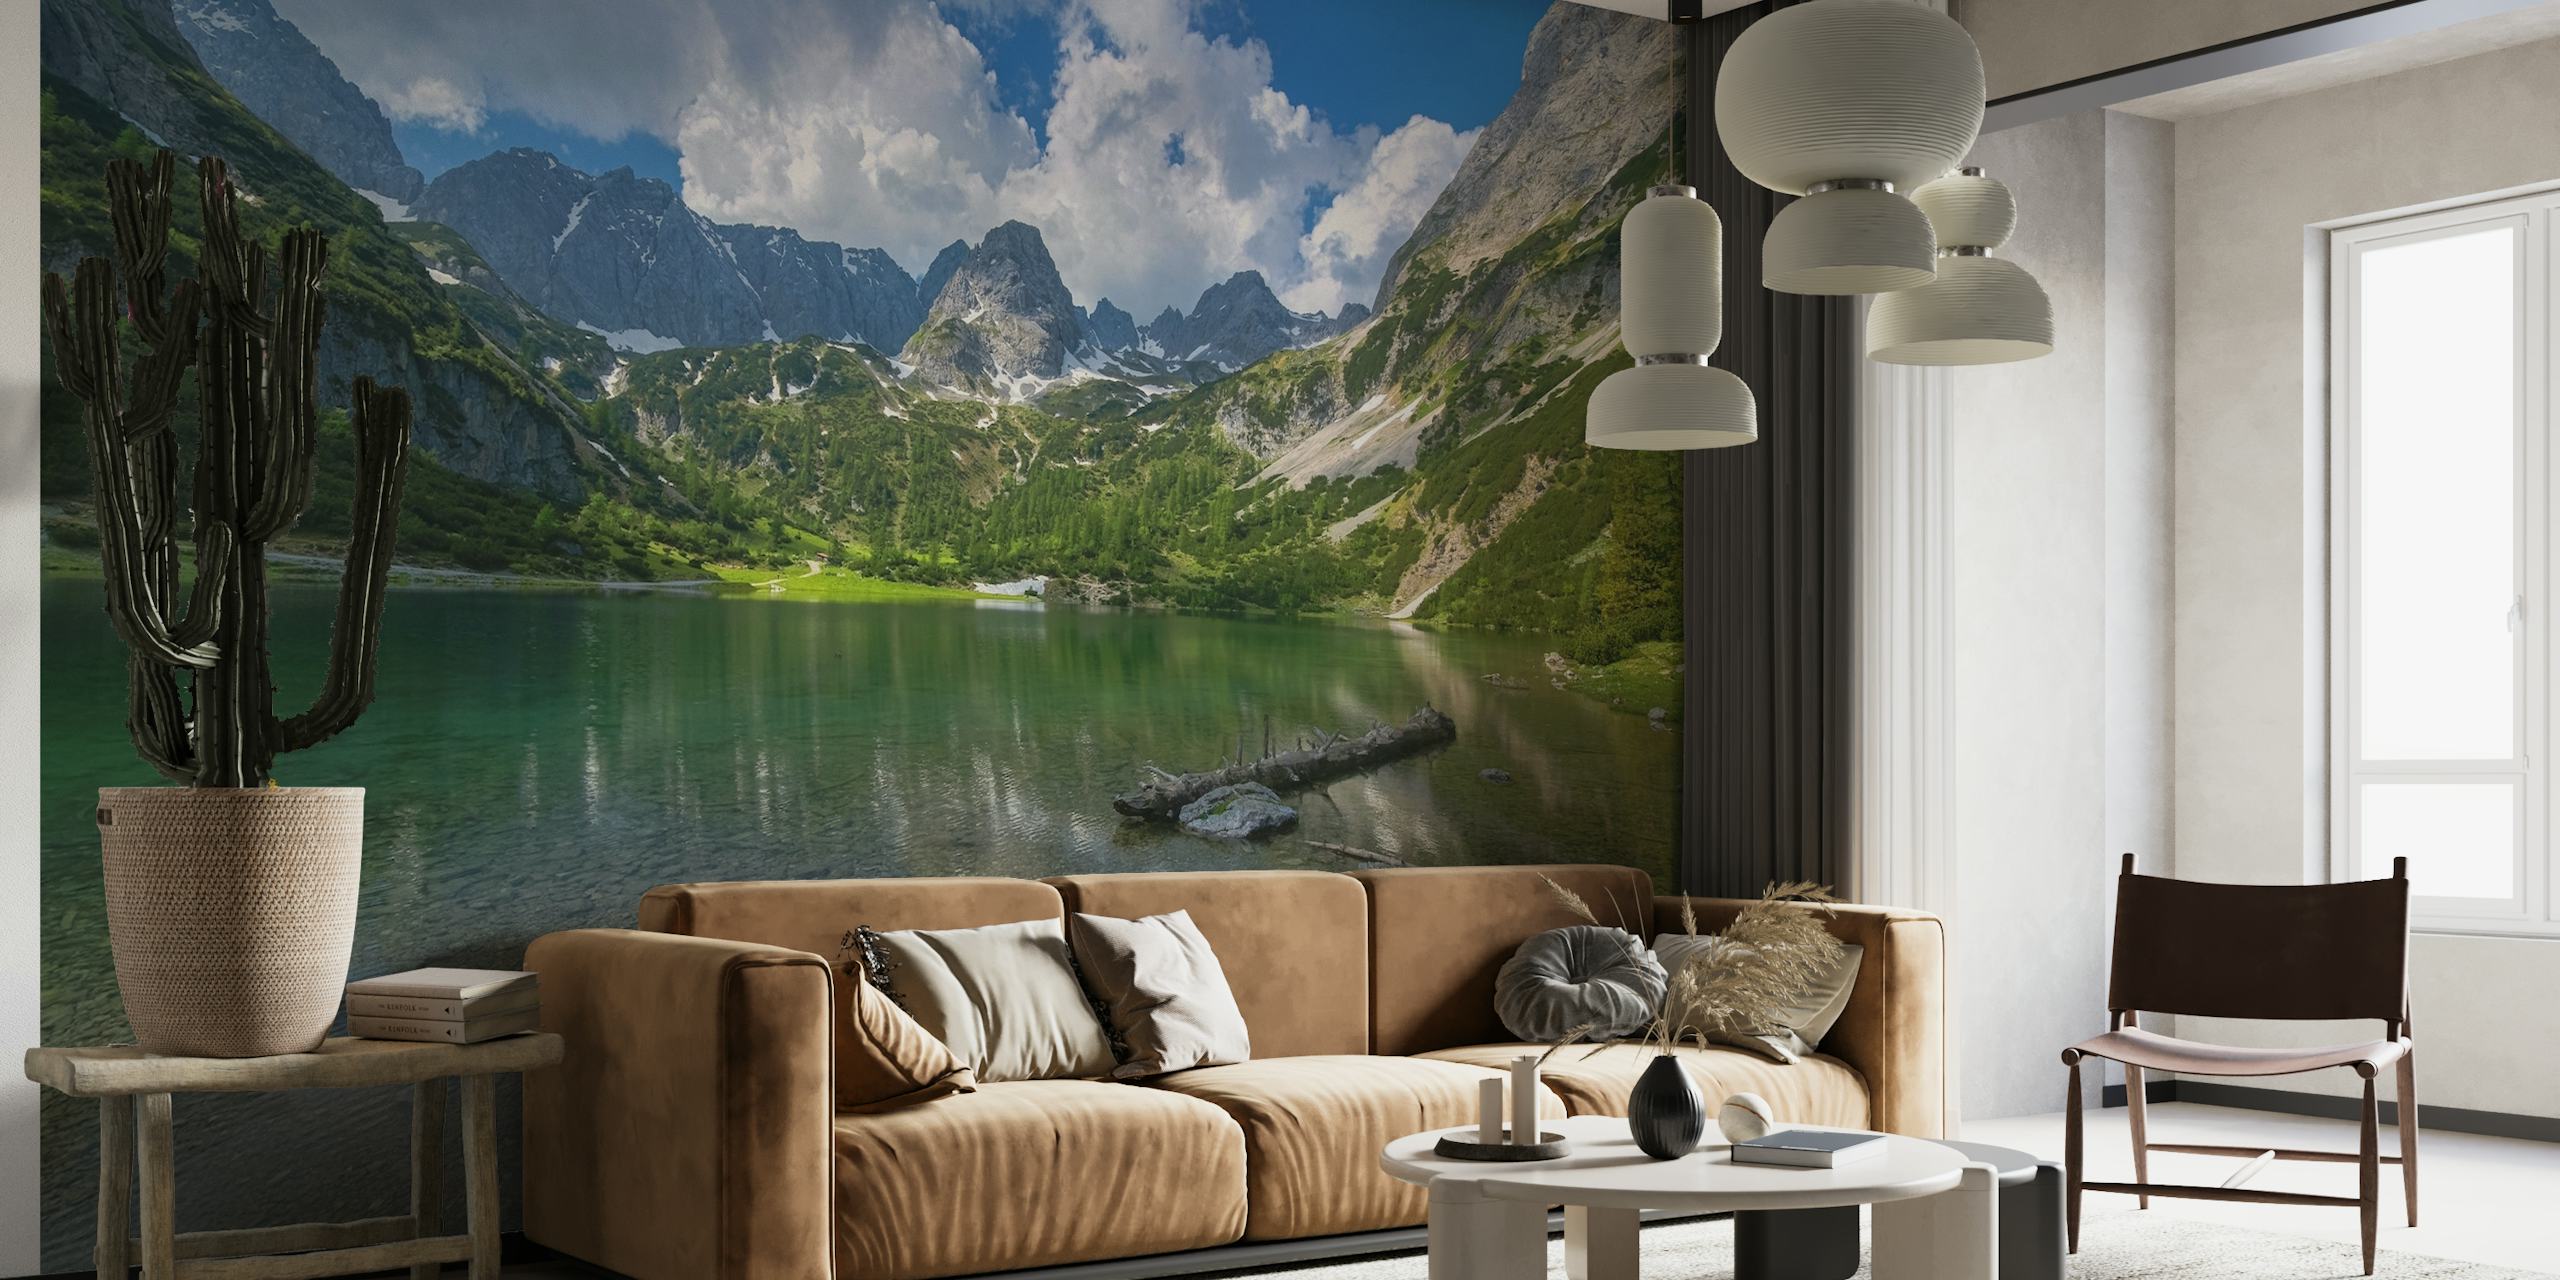 Seebensea at Tirol-vægmaleri, der viser en rolig alpesø med bjergreflektioner